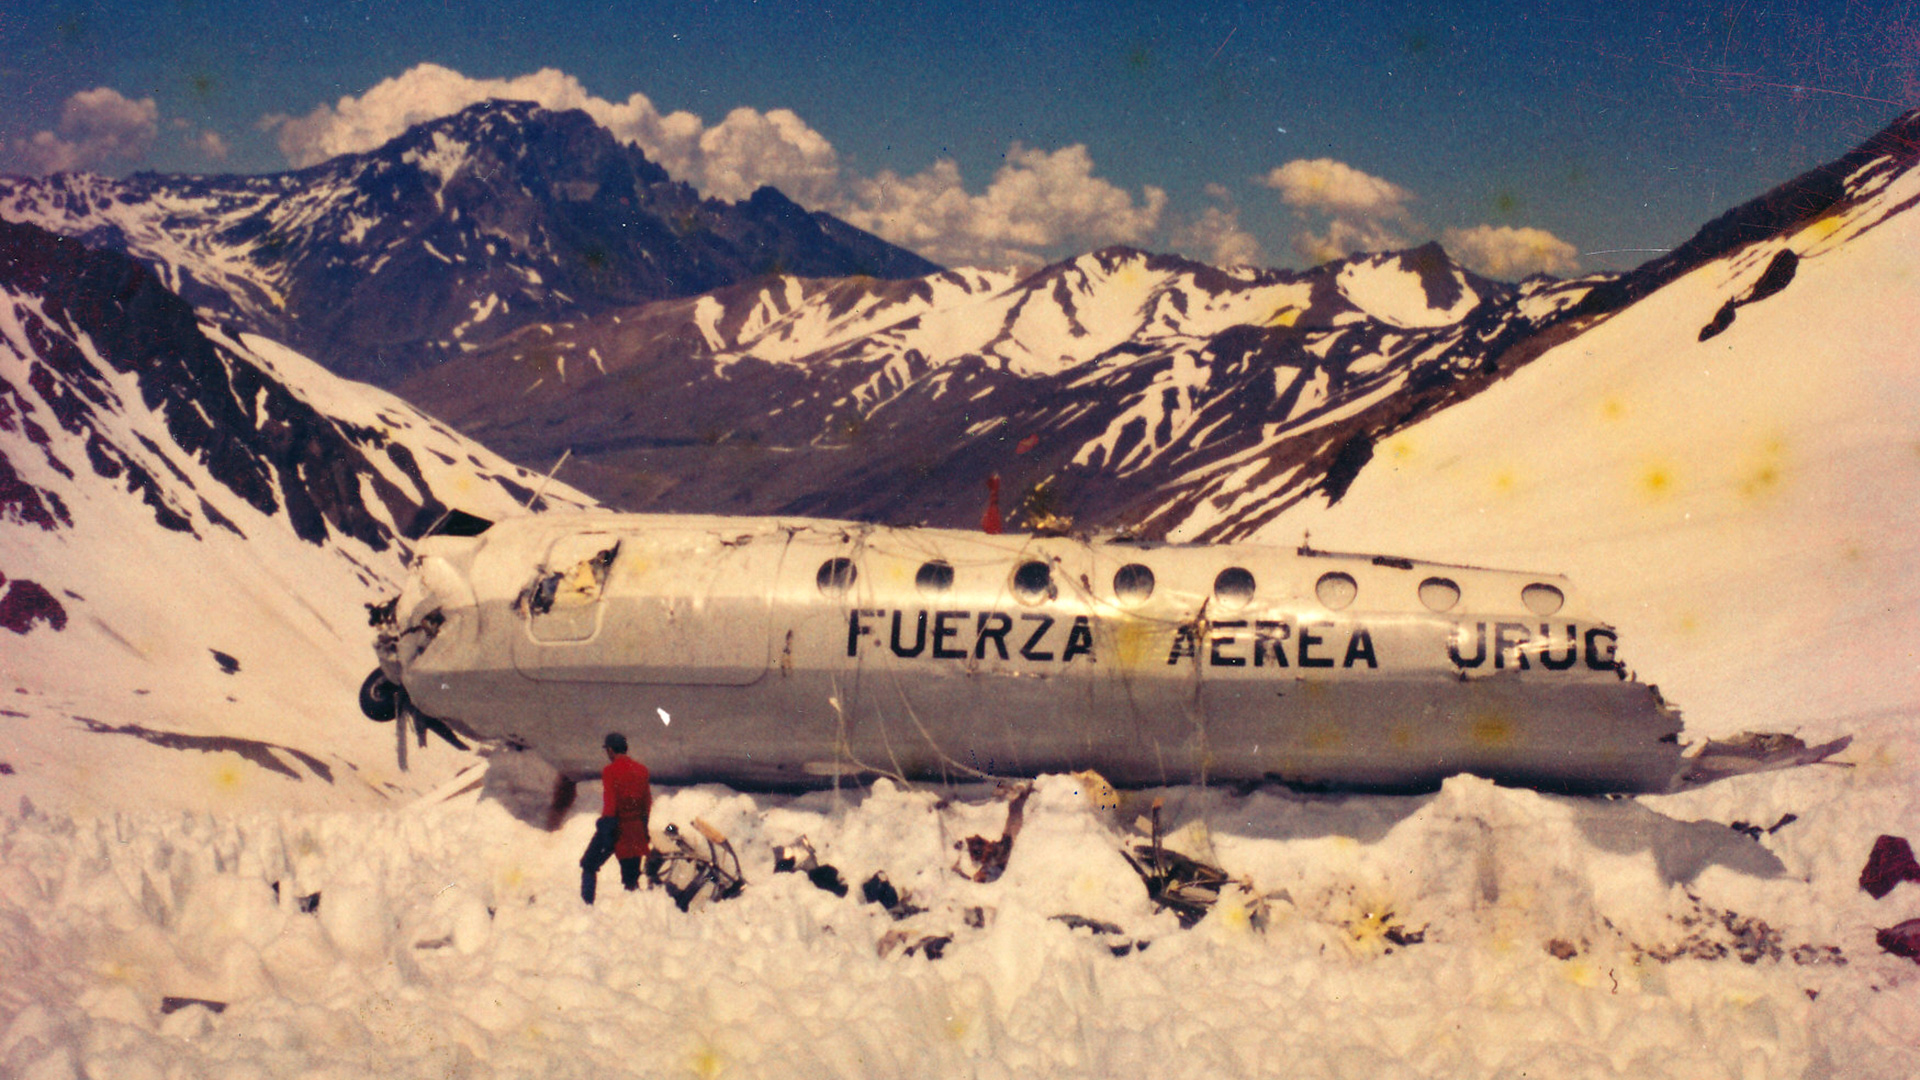 Roberto Canessa, el estudiante de medicina que caminó 10 días por los Andes  y sale en 'La sociedad de la nieve', Tragedia en los Andes, milagro en  los andes